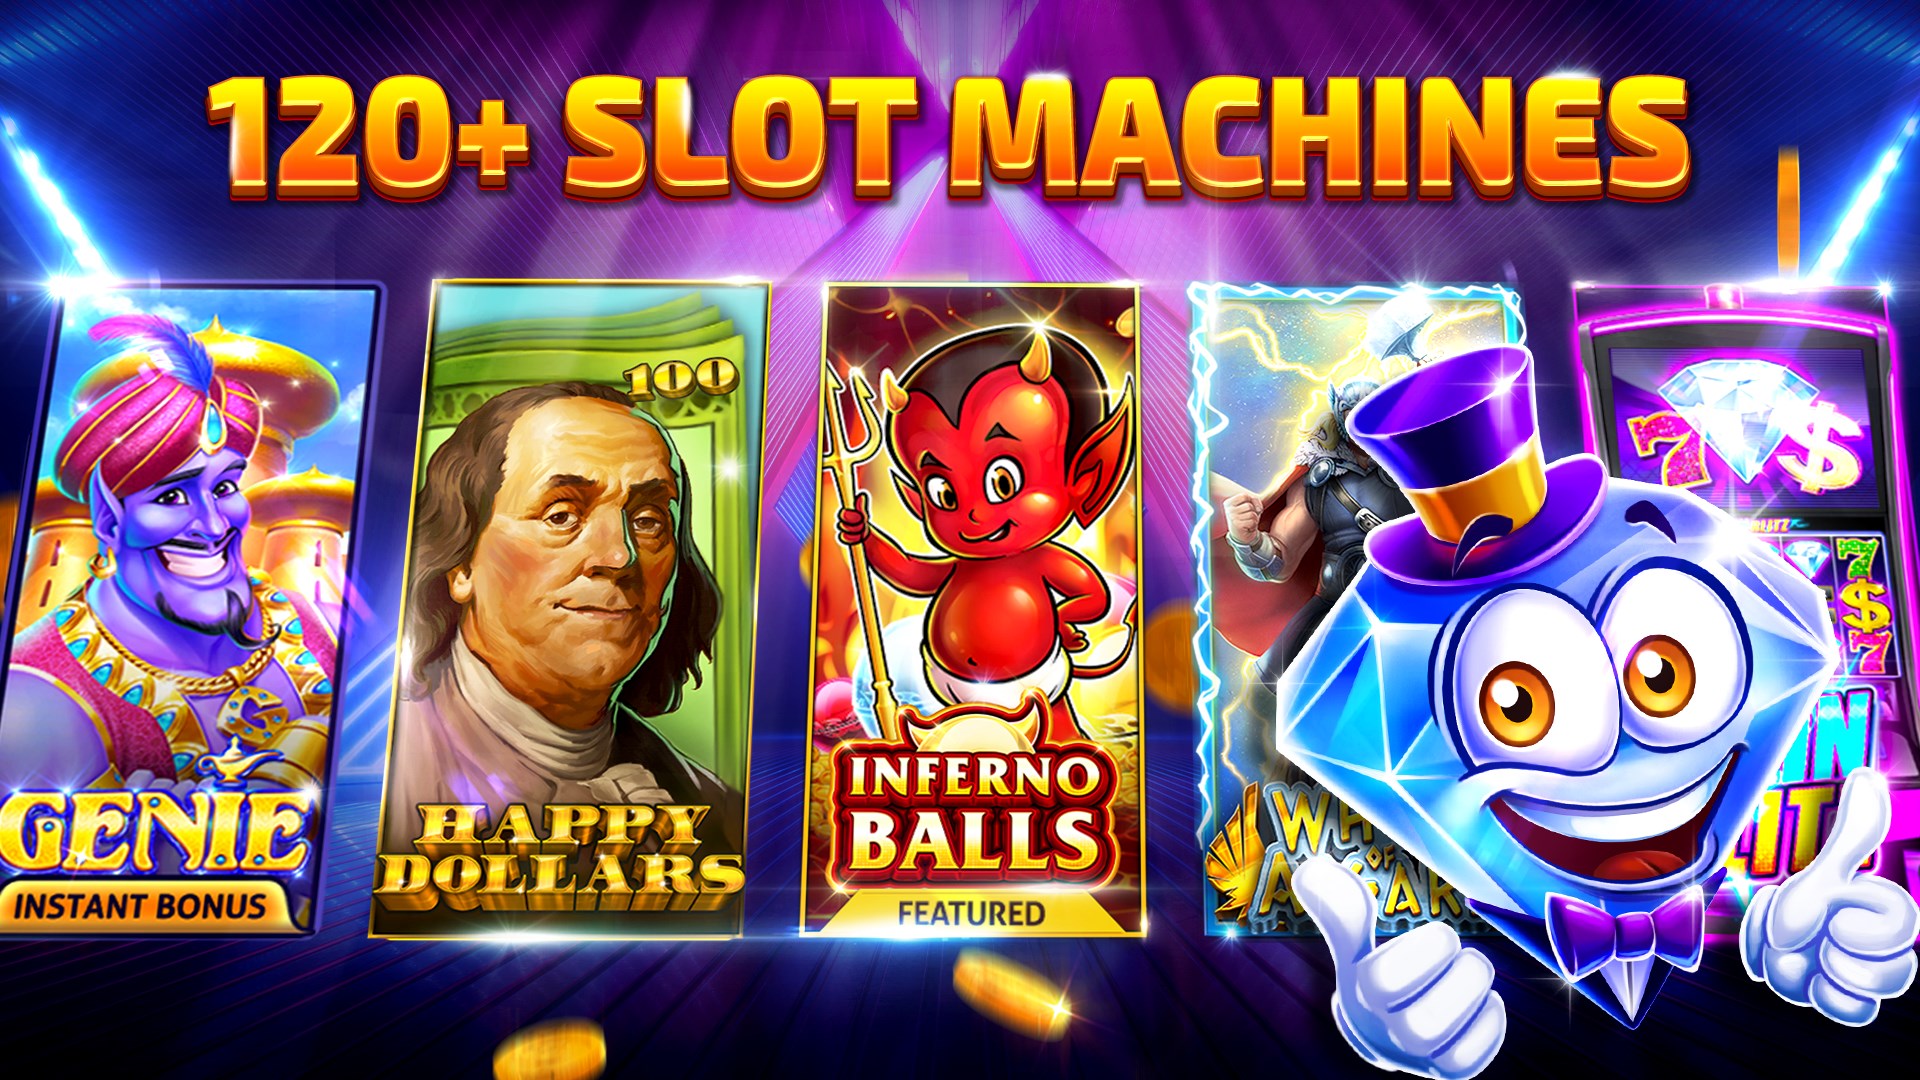 Get Cash Billionaire Casino - Slot Machine Games - Microsoft Store tn-ZA